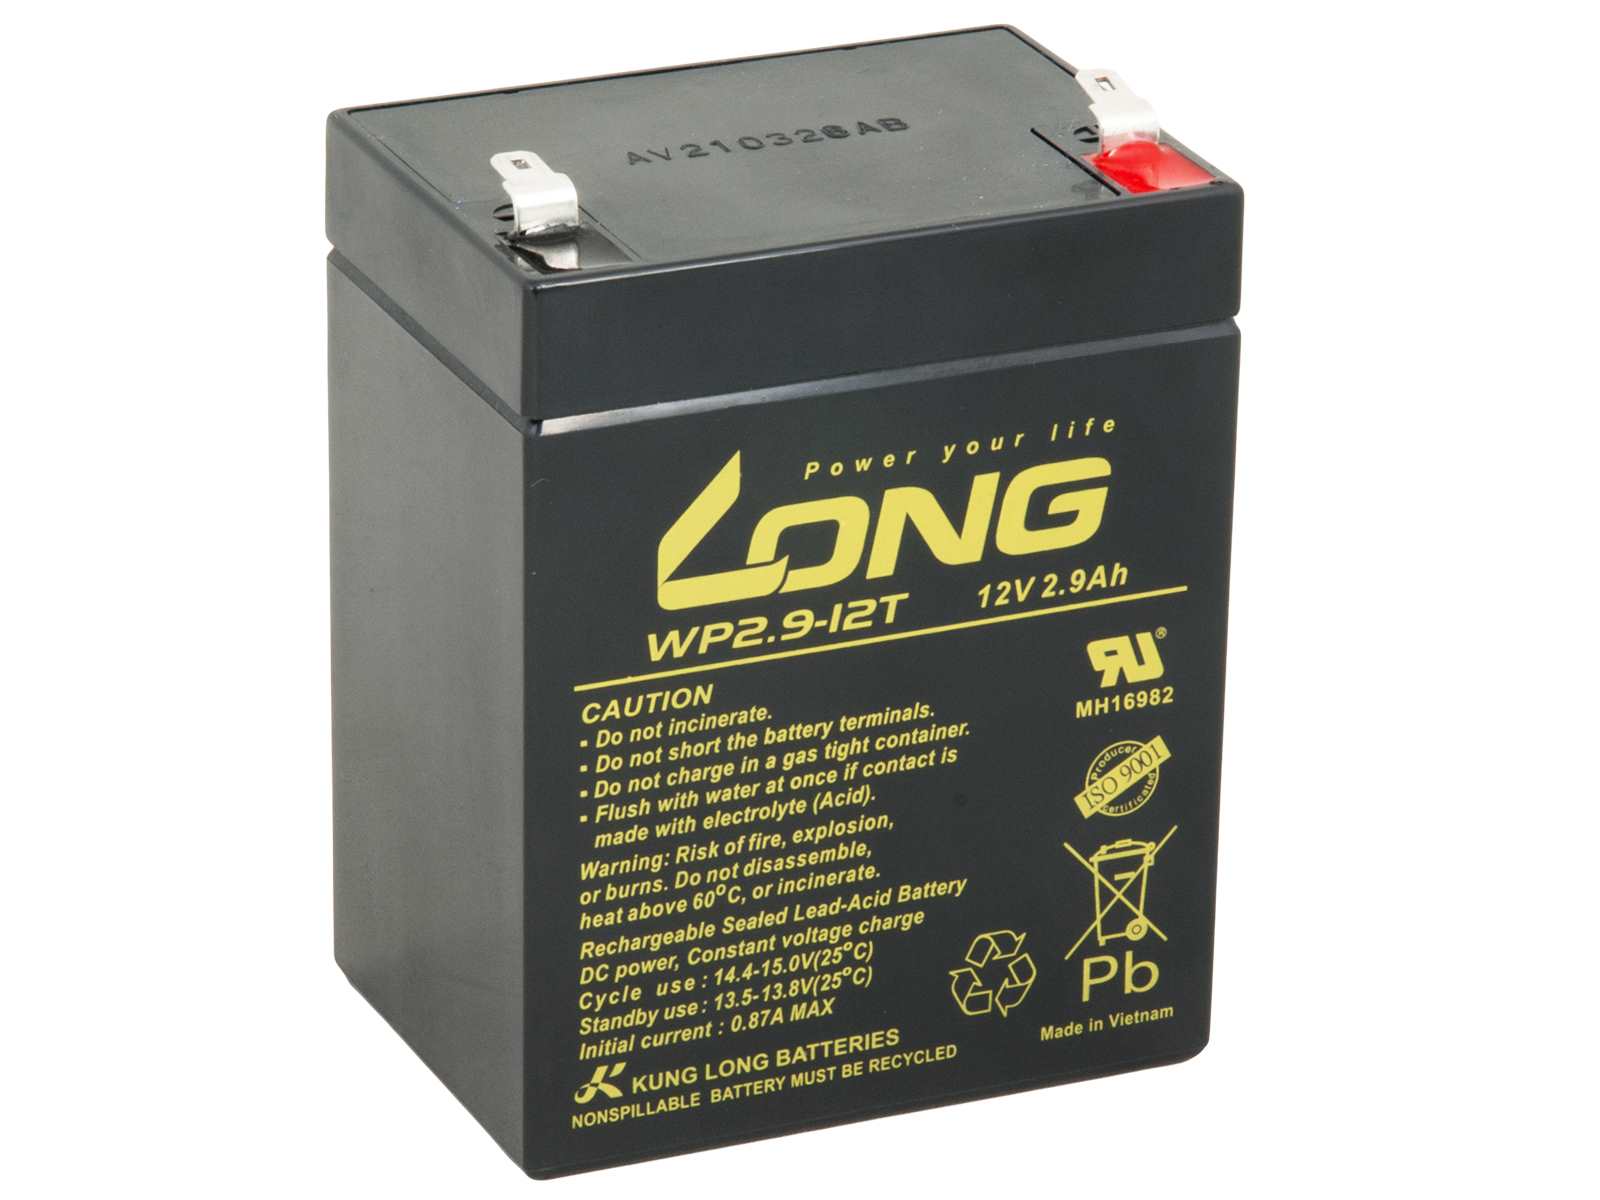 LONG batéria 12V 2, 9Ah F1 (WP2.9-12T)0 